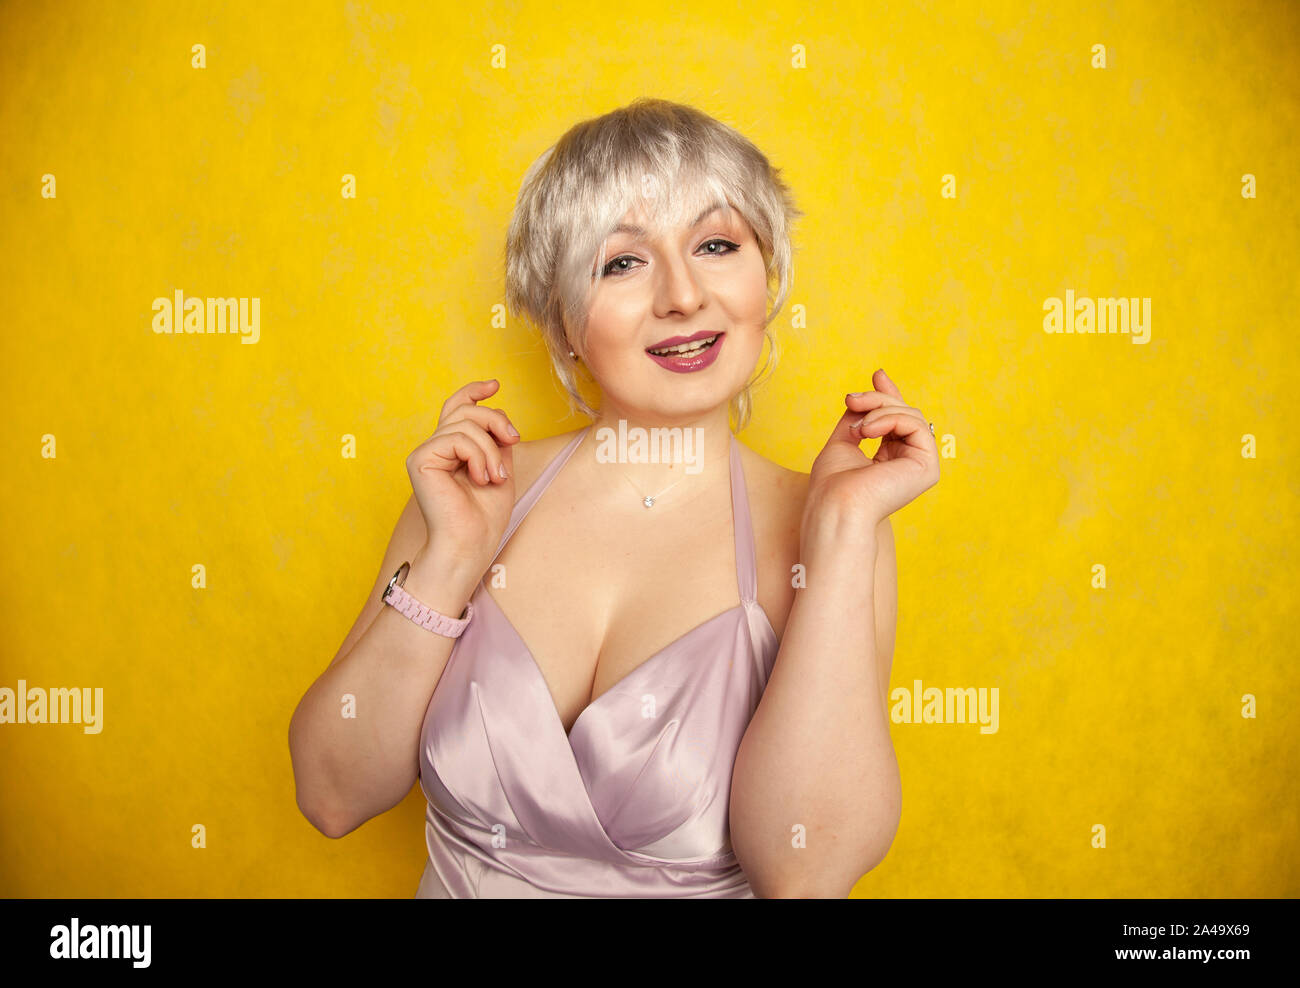 Heureux cheveux courts blonde avec grande taille corps posant en robe couleur lilas jaune sur fond studio seul Banque D'Images